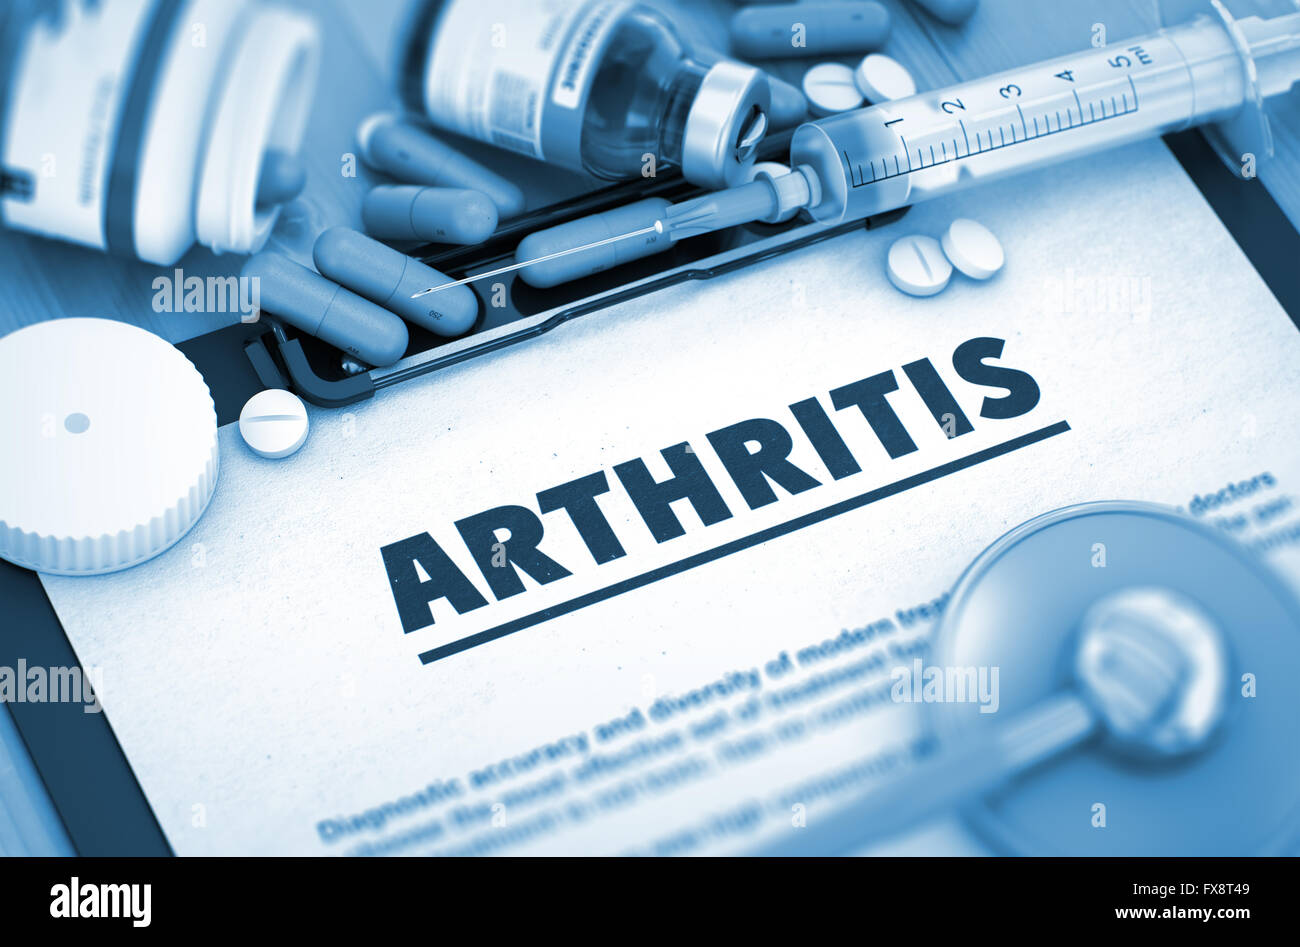 Arthritis. Medical Concept. Stock Photo